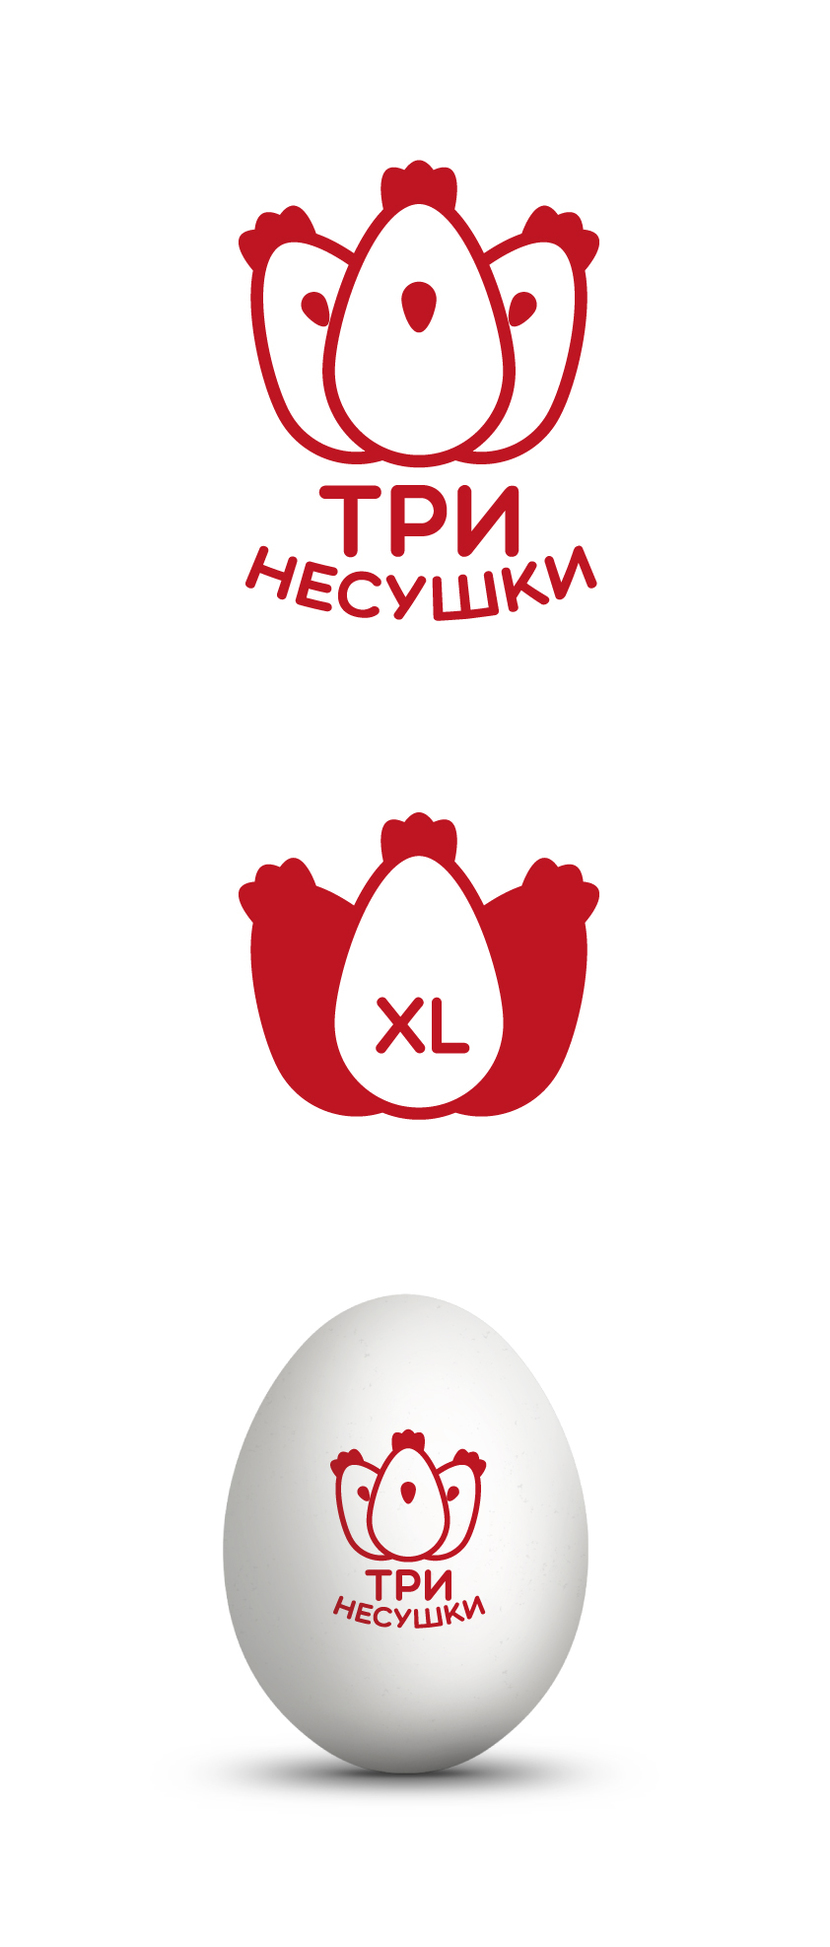 Простой, понятный образ который легко может использоваться в элементах оформления. - Разработка логотипа и фирменного стиля для нового бренда куриных яиц "Три несушки"